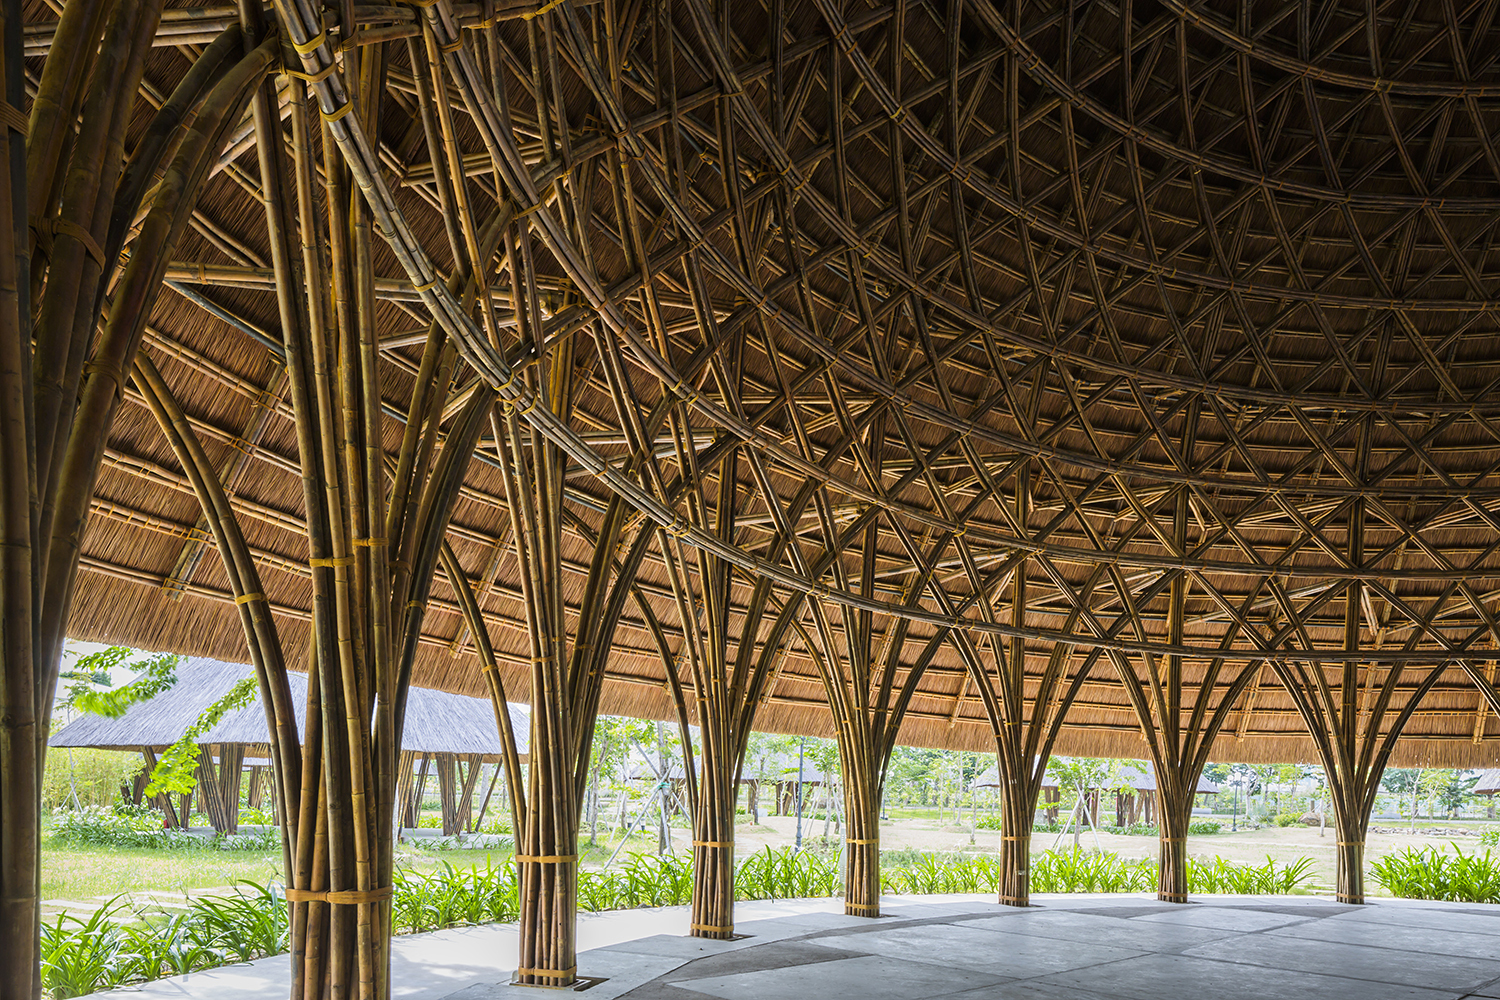 Cúpulas de bambu misturam arte tradicional e arquitetura contemporânea